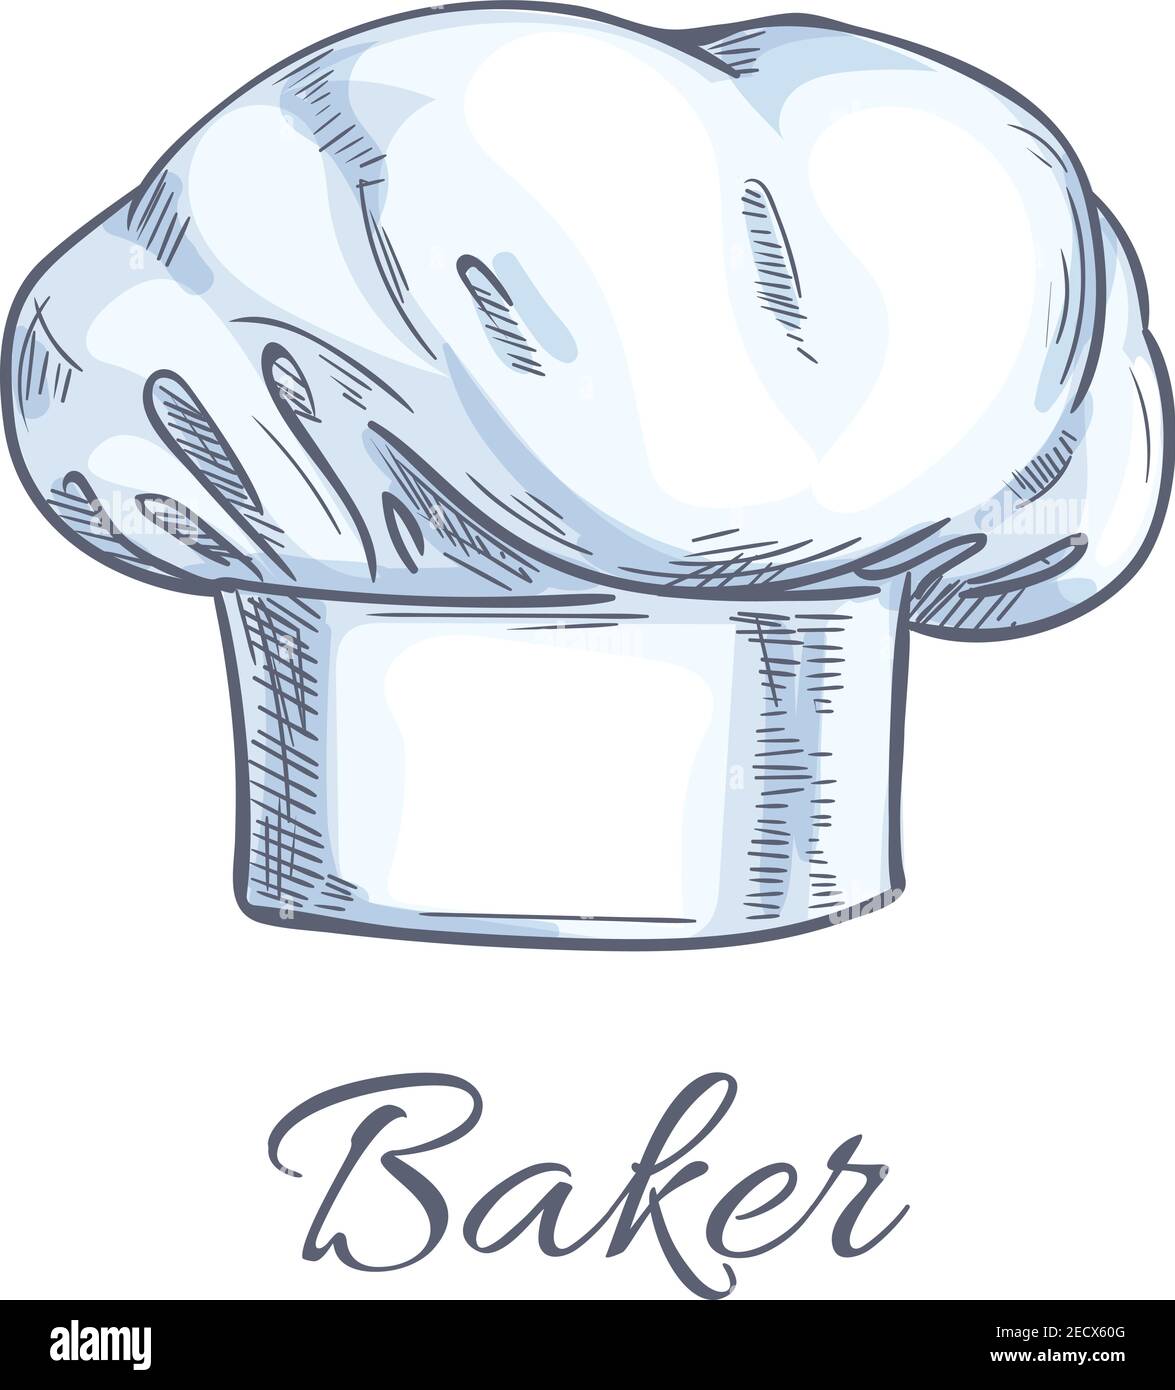 Dessin d'un chapeau de cuisinier ou de Baker avec une tenue de tête blanche  professionnelle de chef exécutif, sous-chef, cuisinier, chef de gamme et  autre personnel de cuisine. Resta Image Vectorielle Stock 